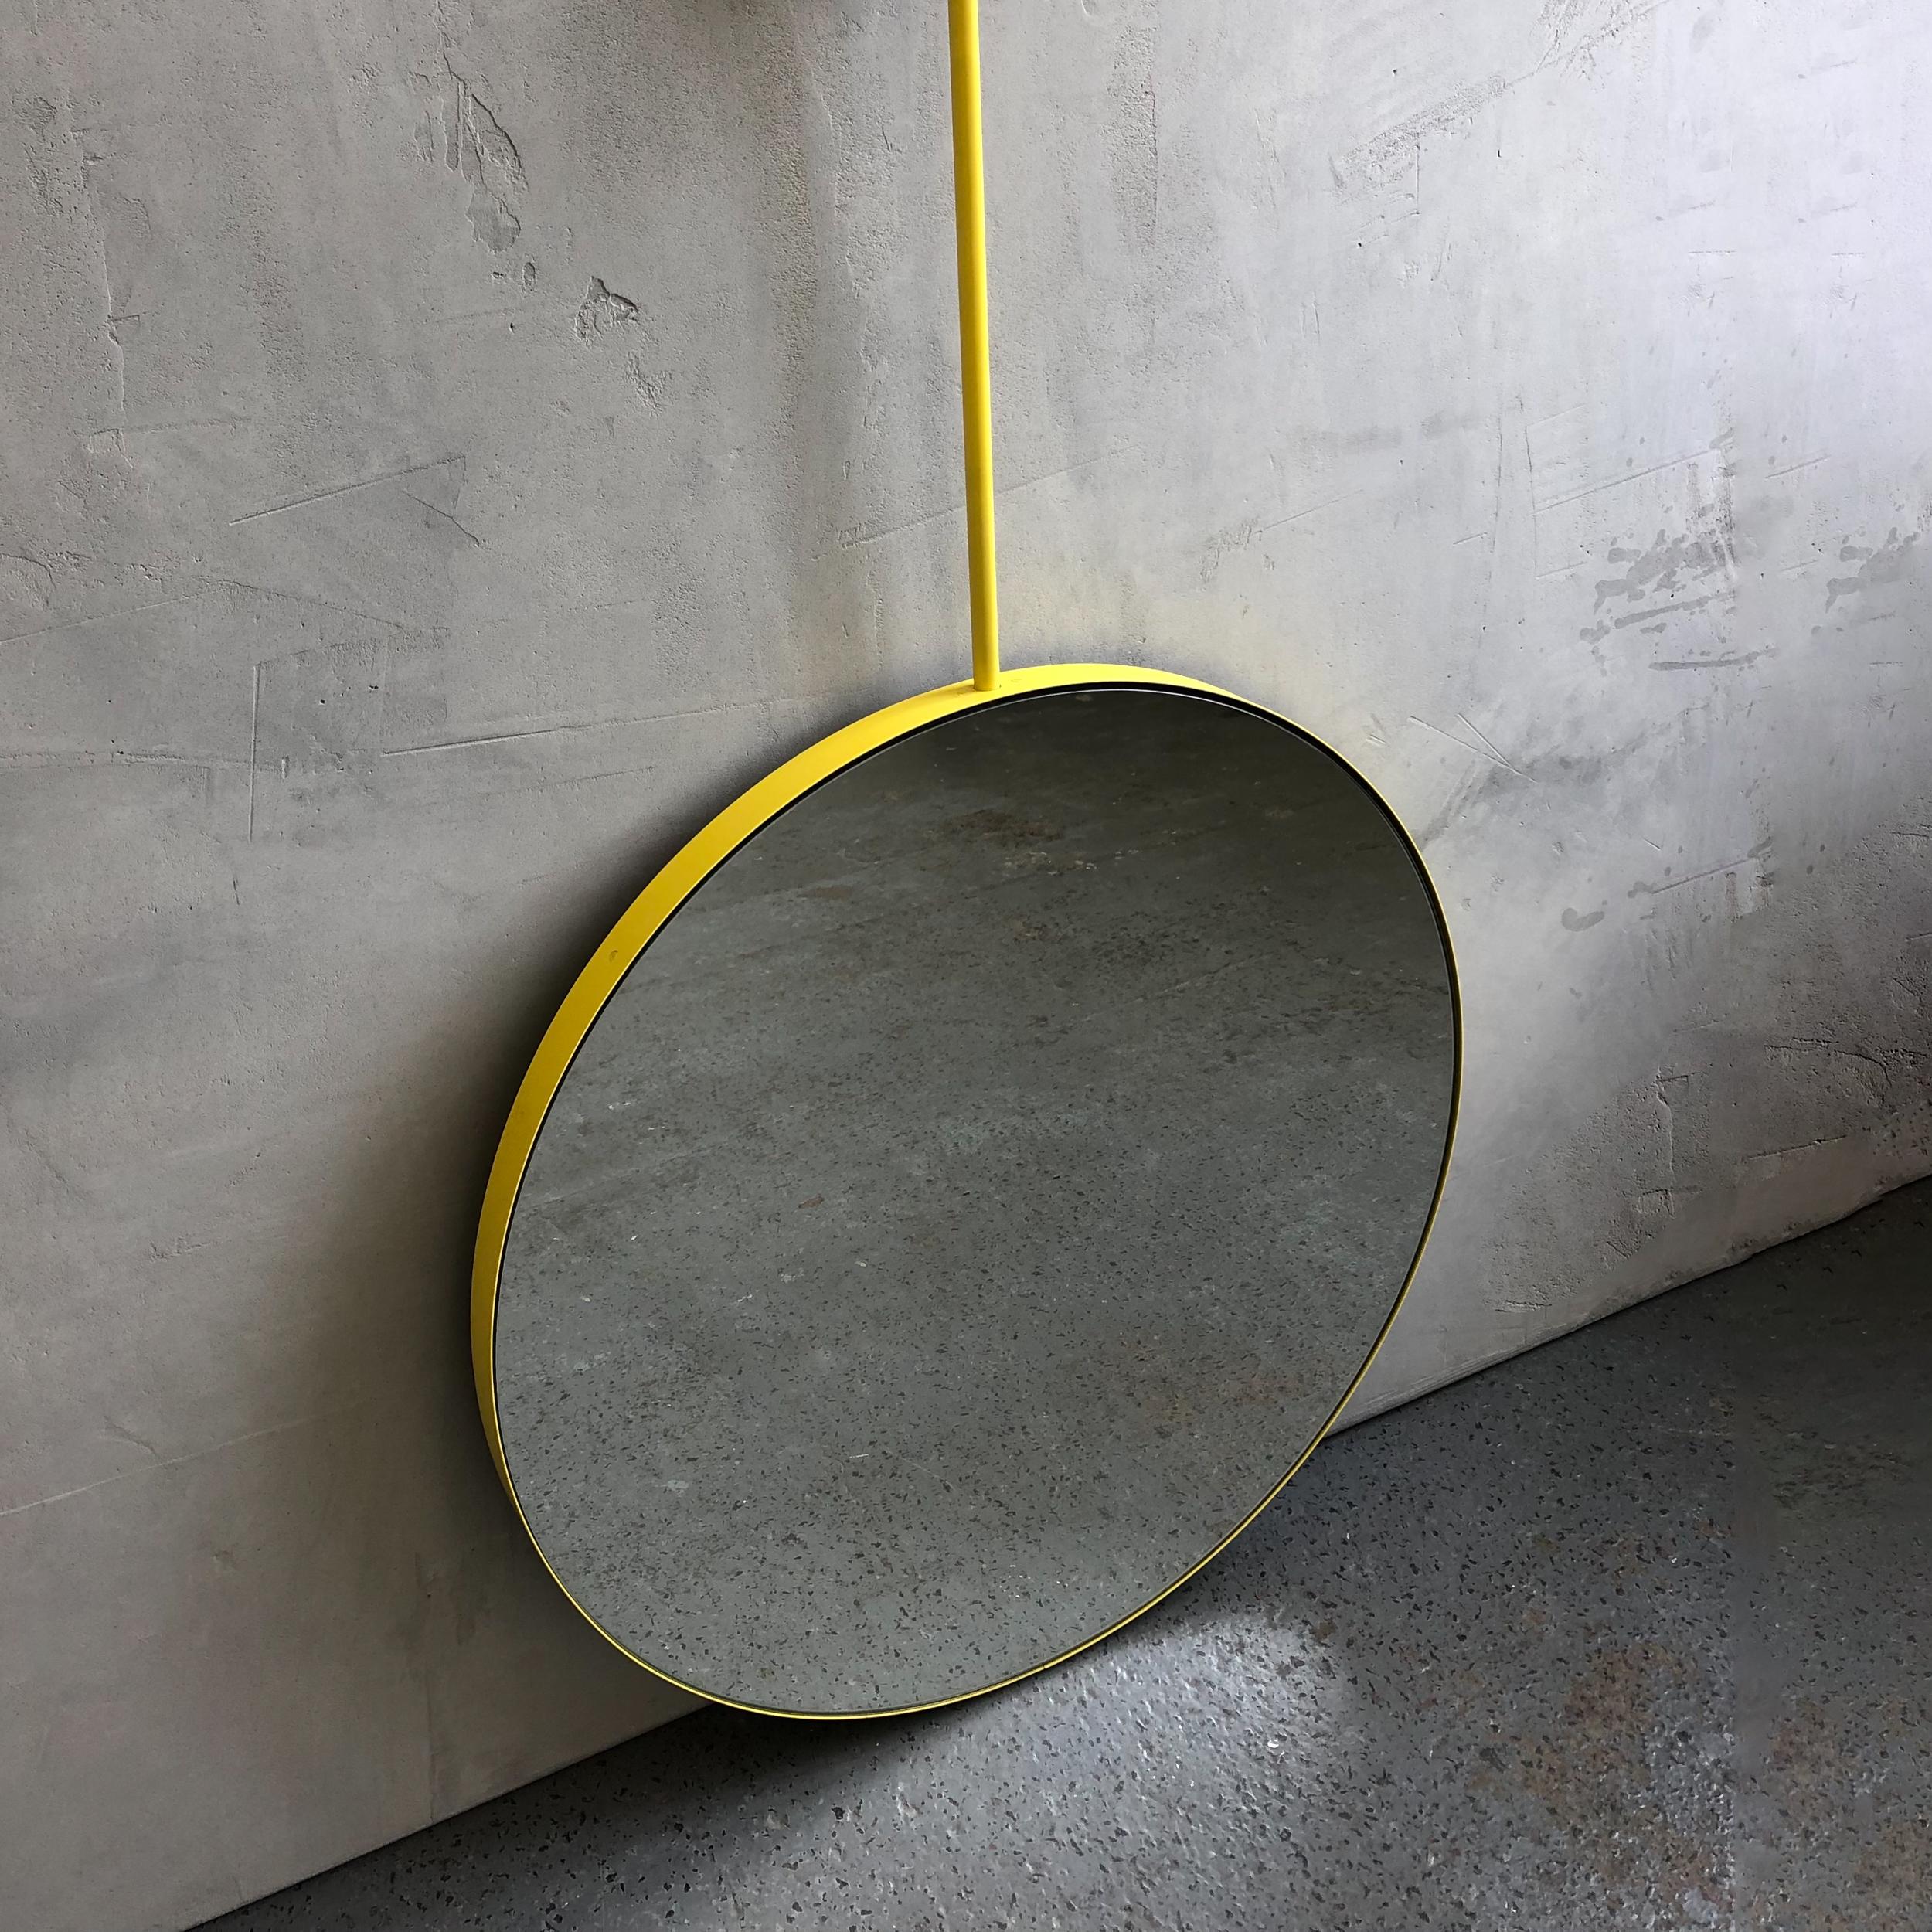 Miroir rond audacieux suspendu au plafond avec un cadre jaune à revêtement en poudre vibrant pour des intérieurs uniques. Disponible dans d'autres couleurs, notamment le noir, le rouge, le vert et le bleu. Également disponible dans des couleurs